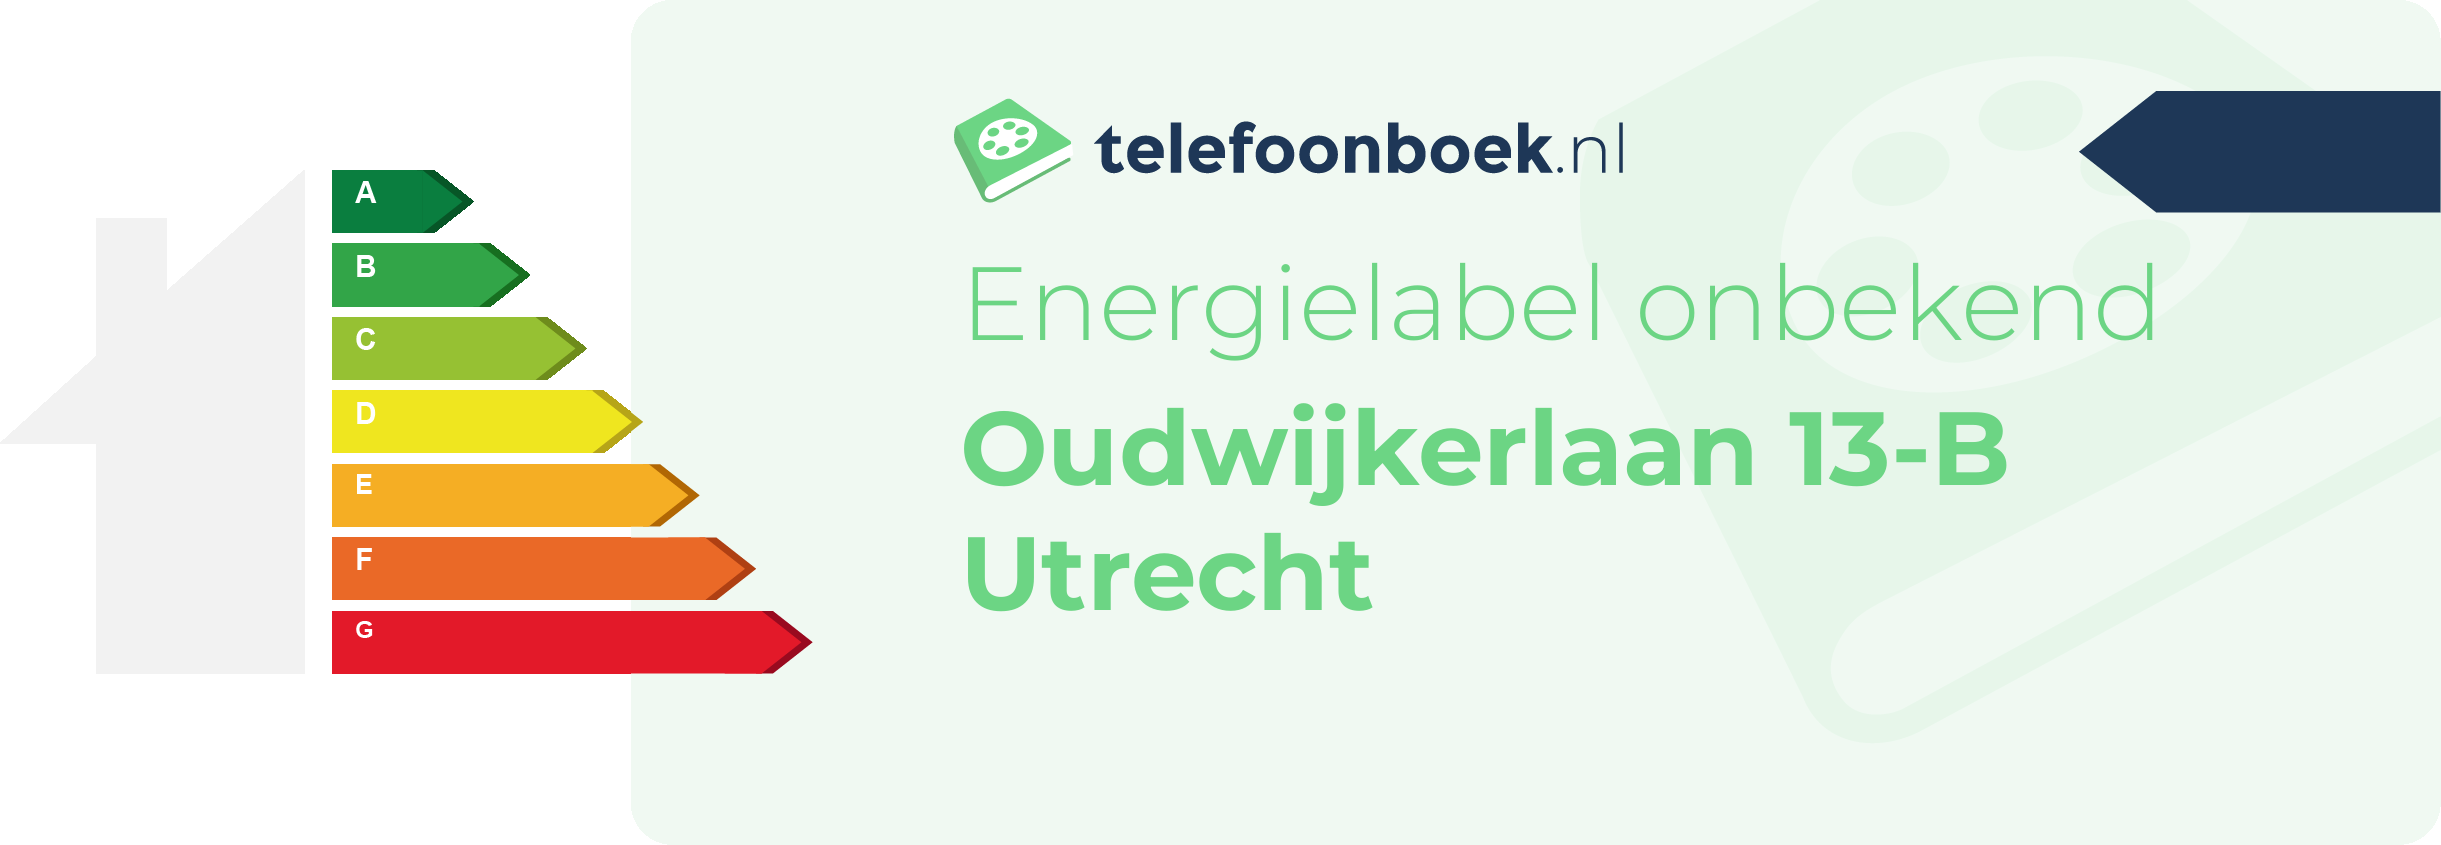 Energielabel Oudwijkerlaan 13-B Utrecht